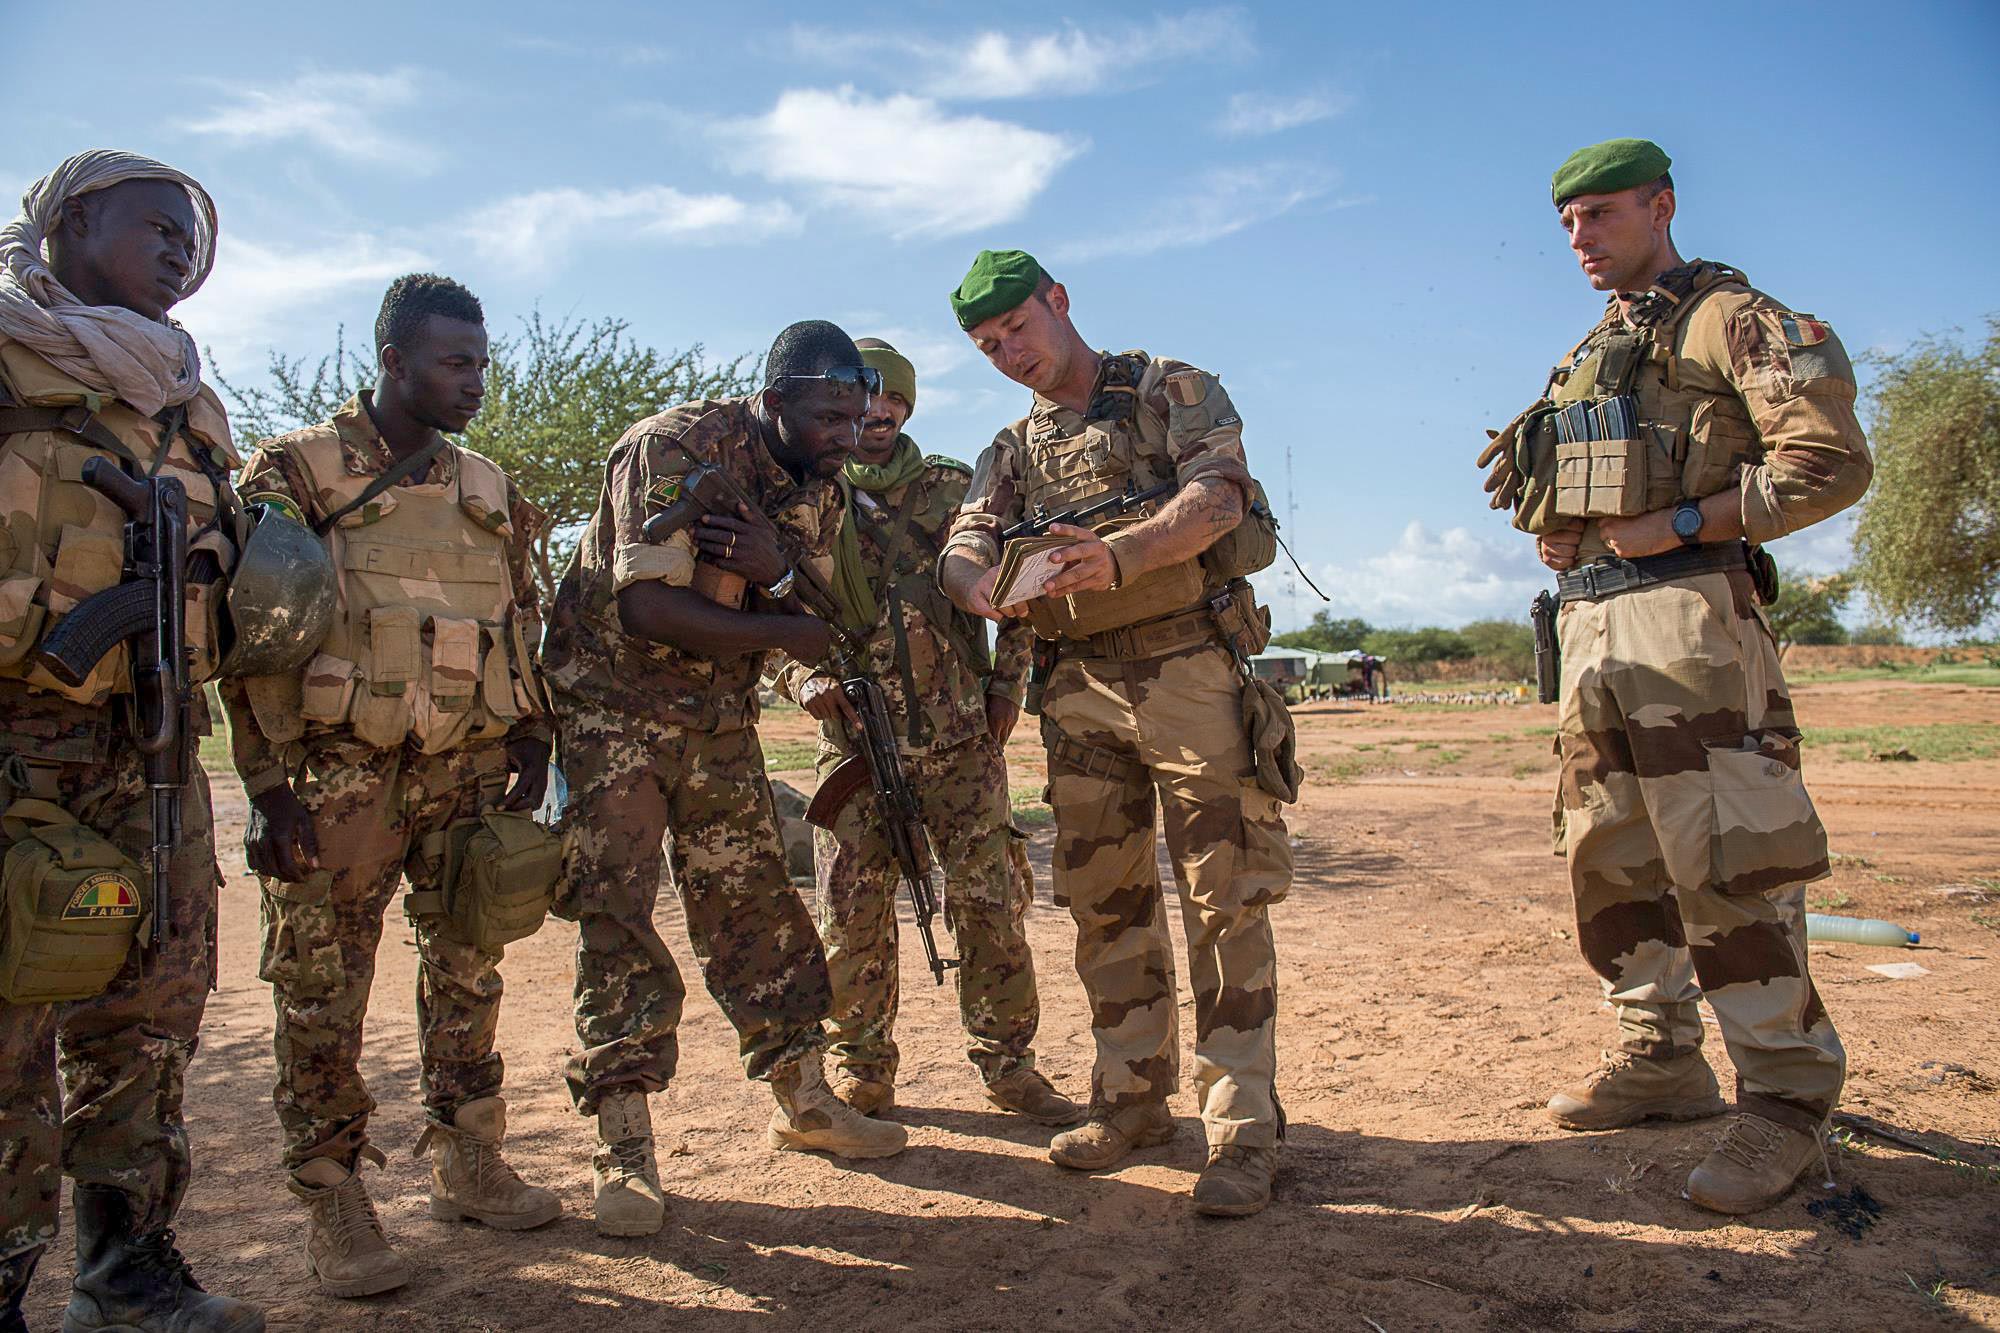 مكافحة الإرهاب في إفريقيا ـ  توسع تنظيمي "داعش" و"القاعدة"